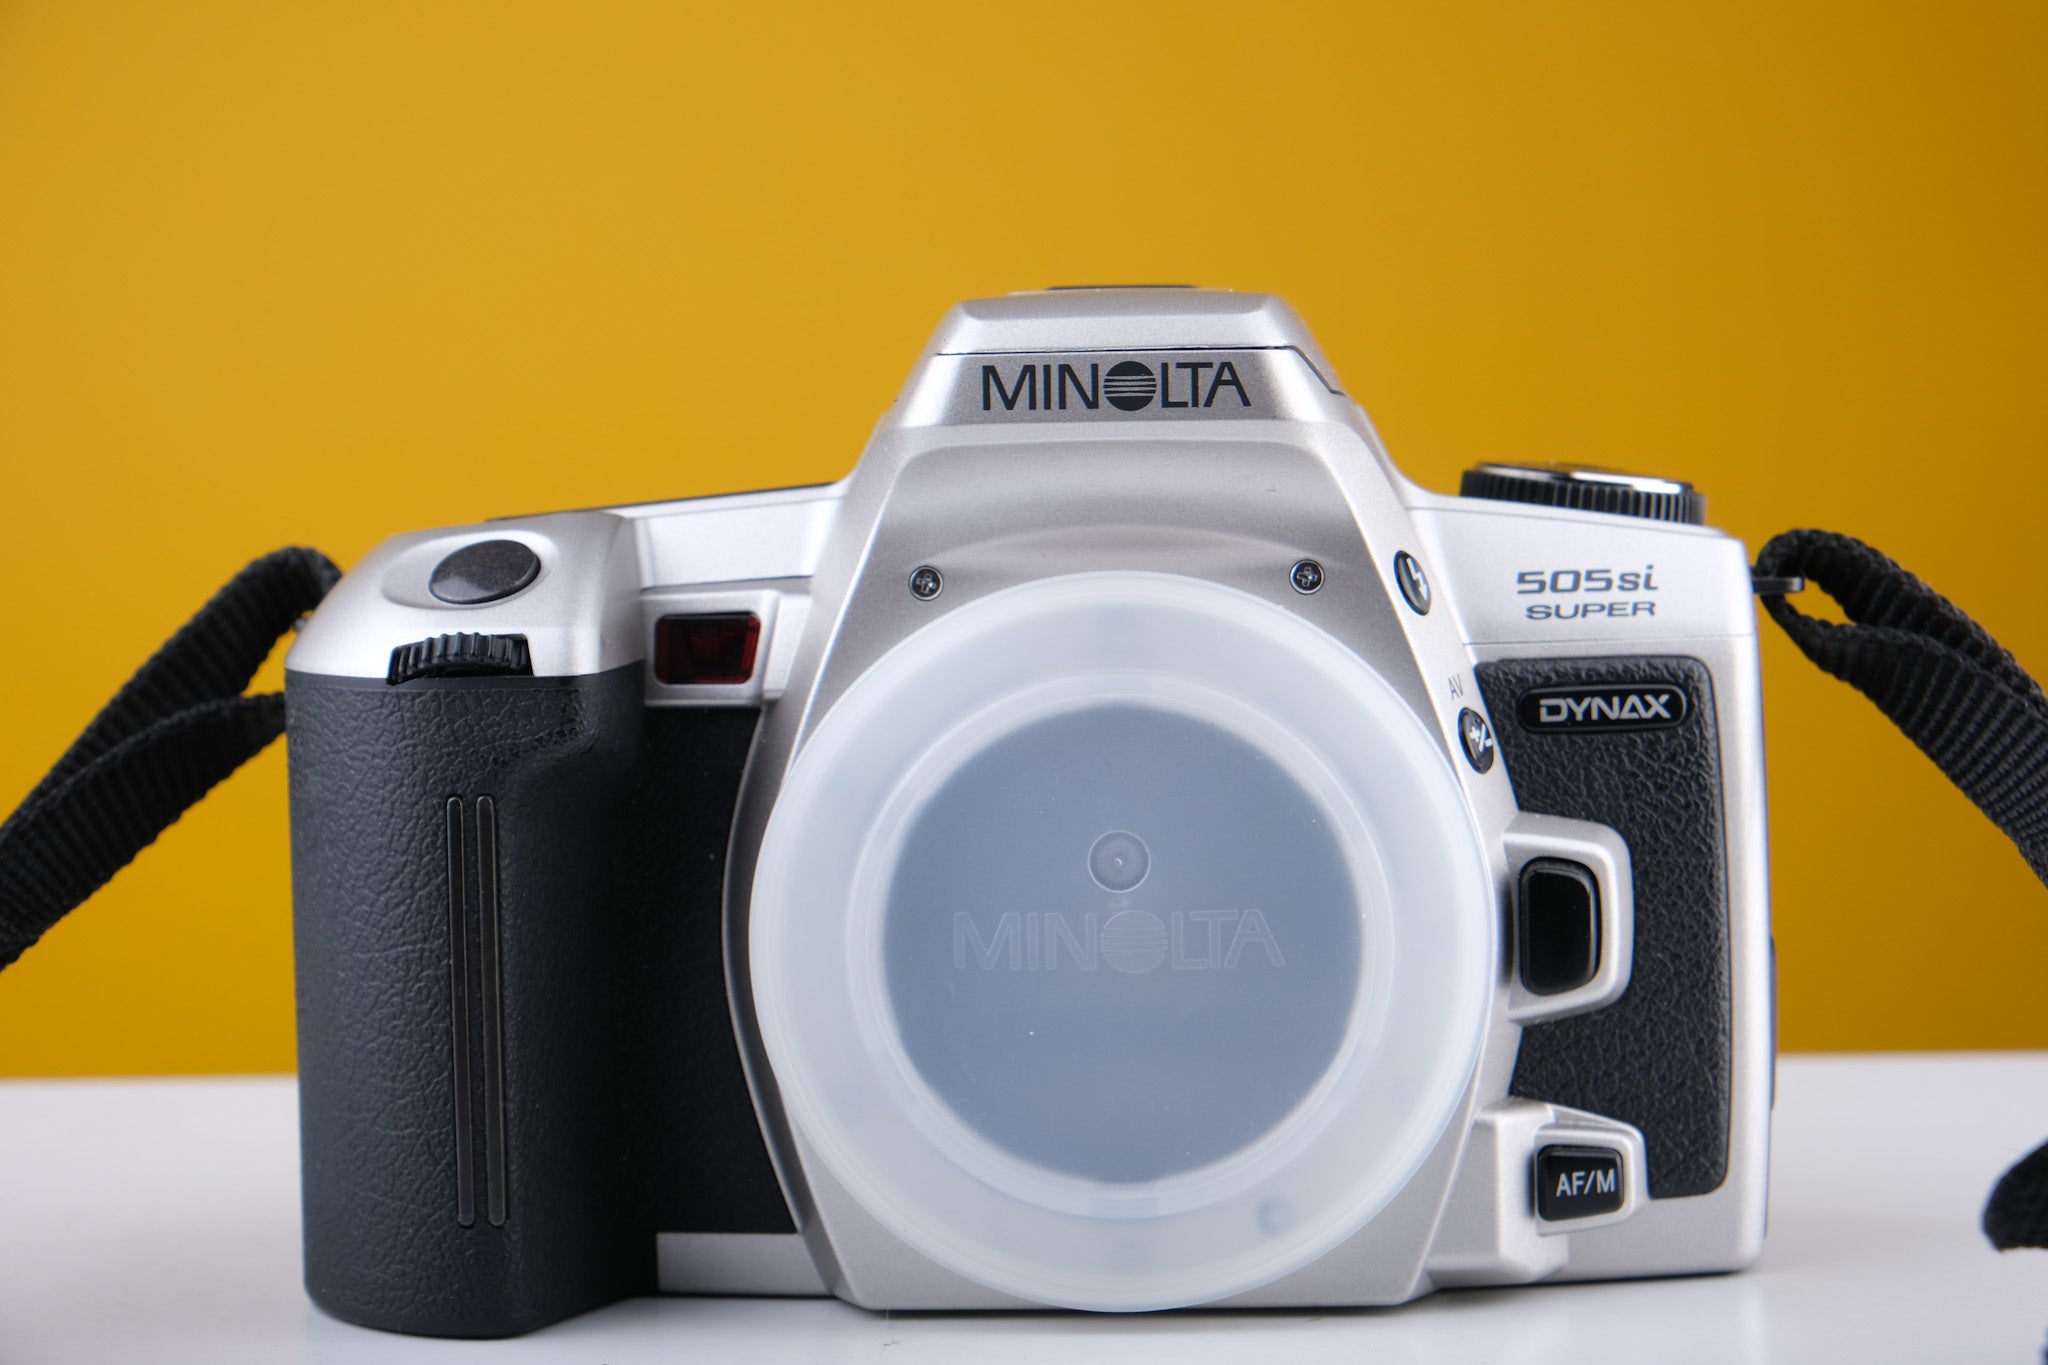 Minolta Dynax 505SI Super Boxed 35mm SLR Film Camera